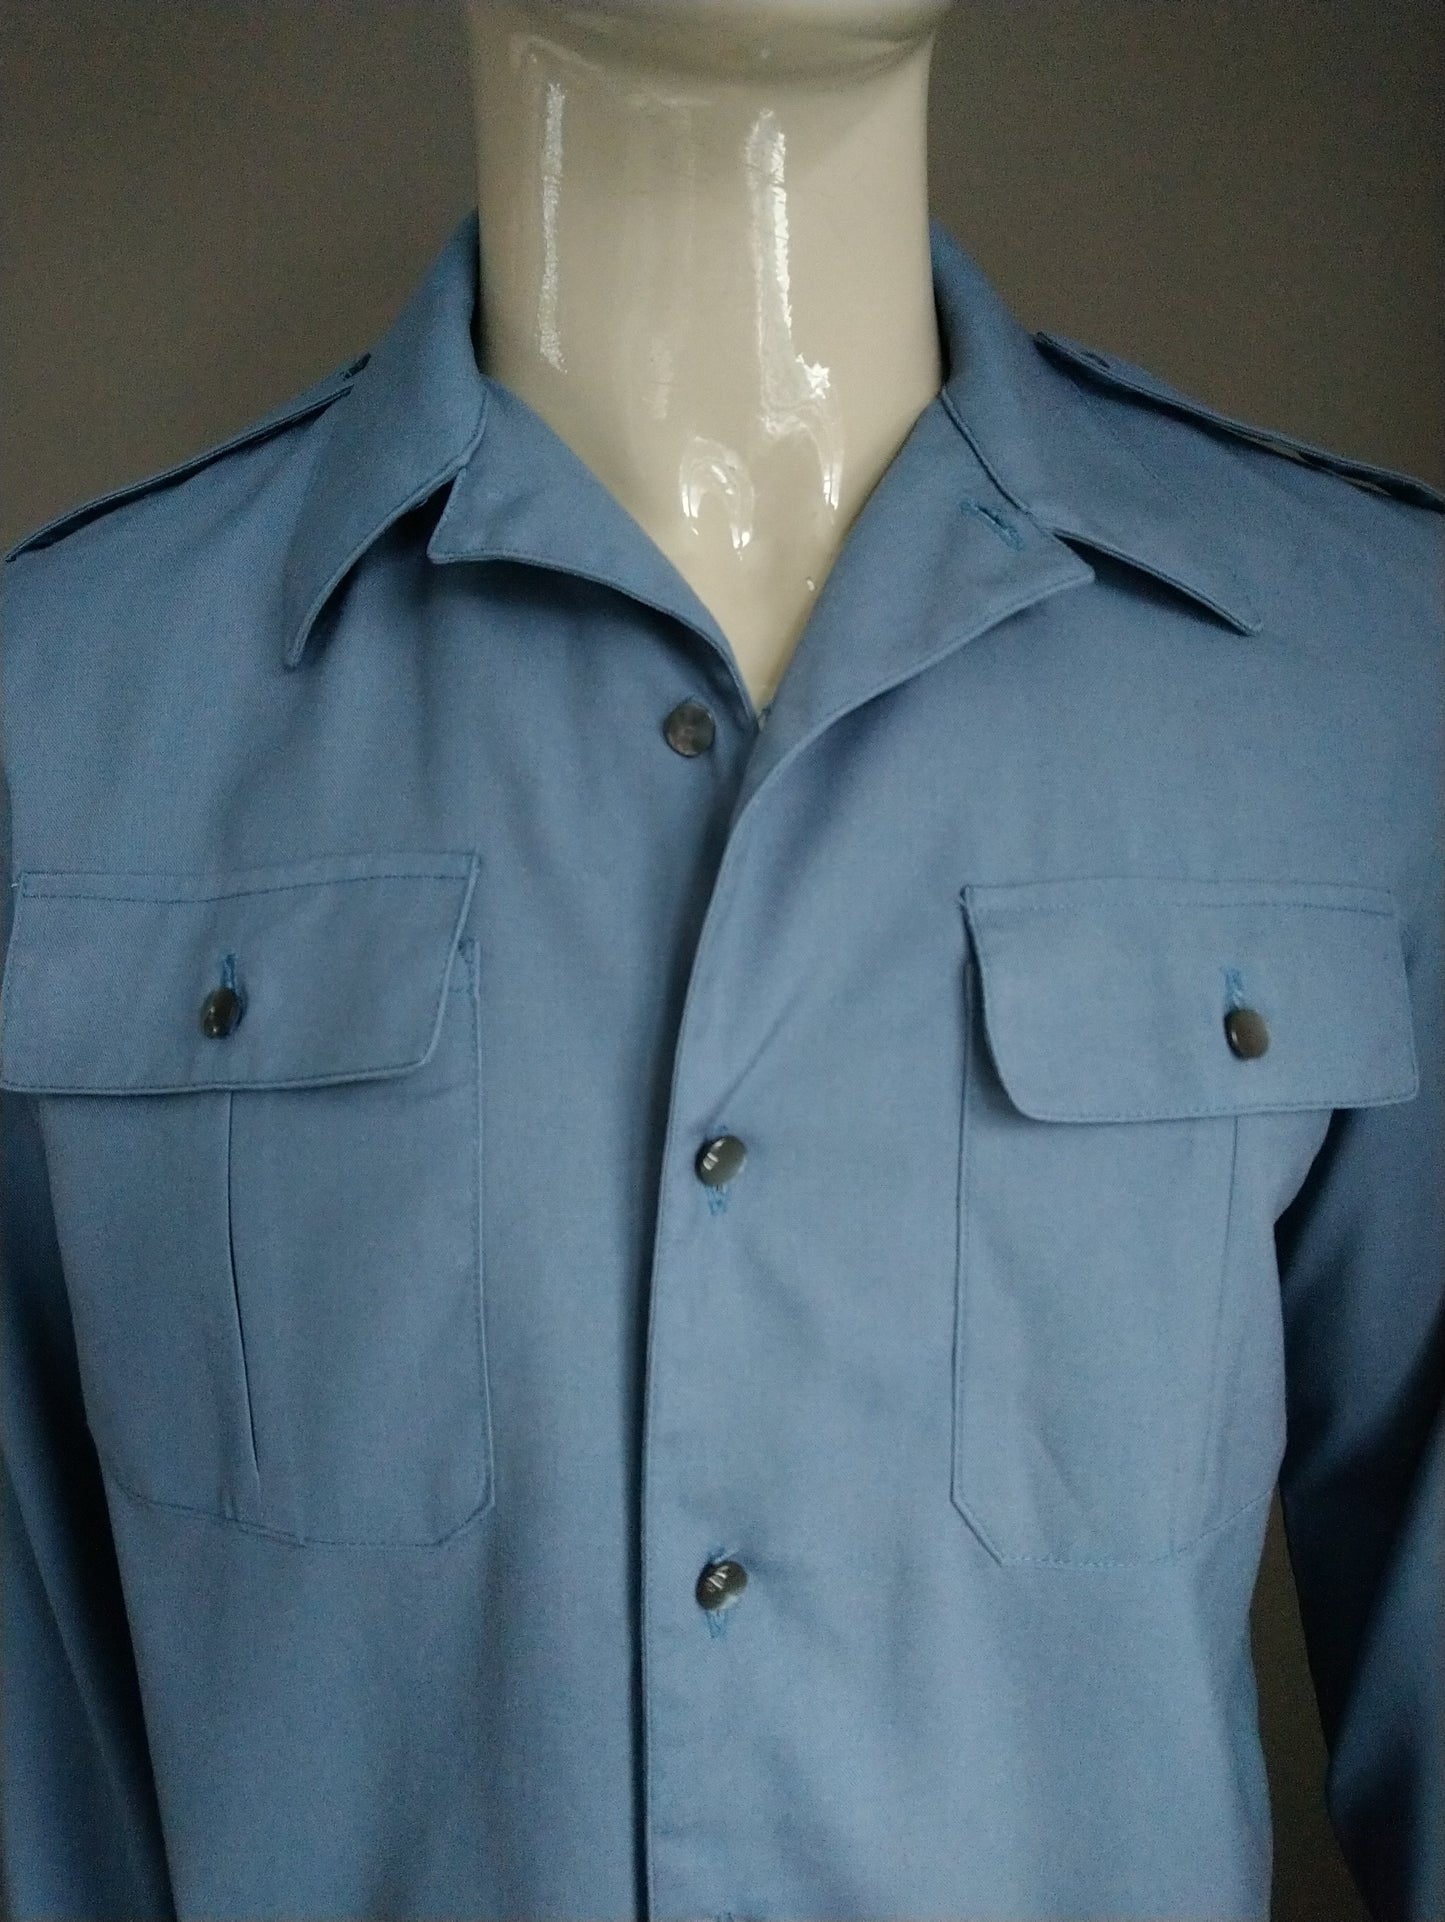 Camicia vintage degli anni '70 con colletto punto. Colorato blu. Taglia L.